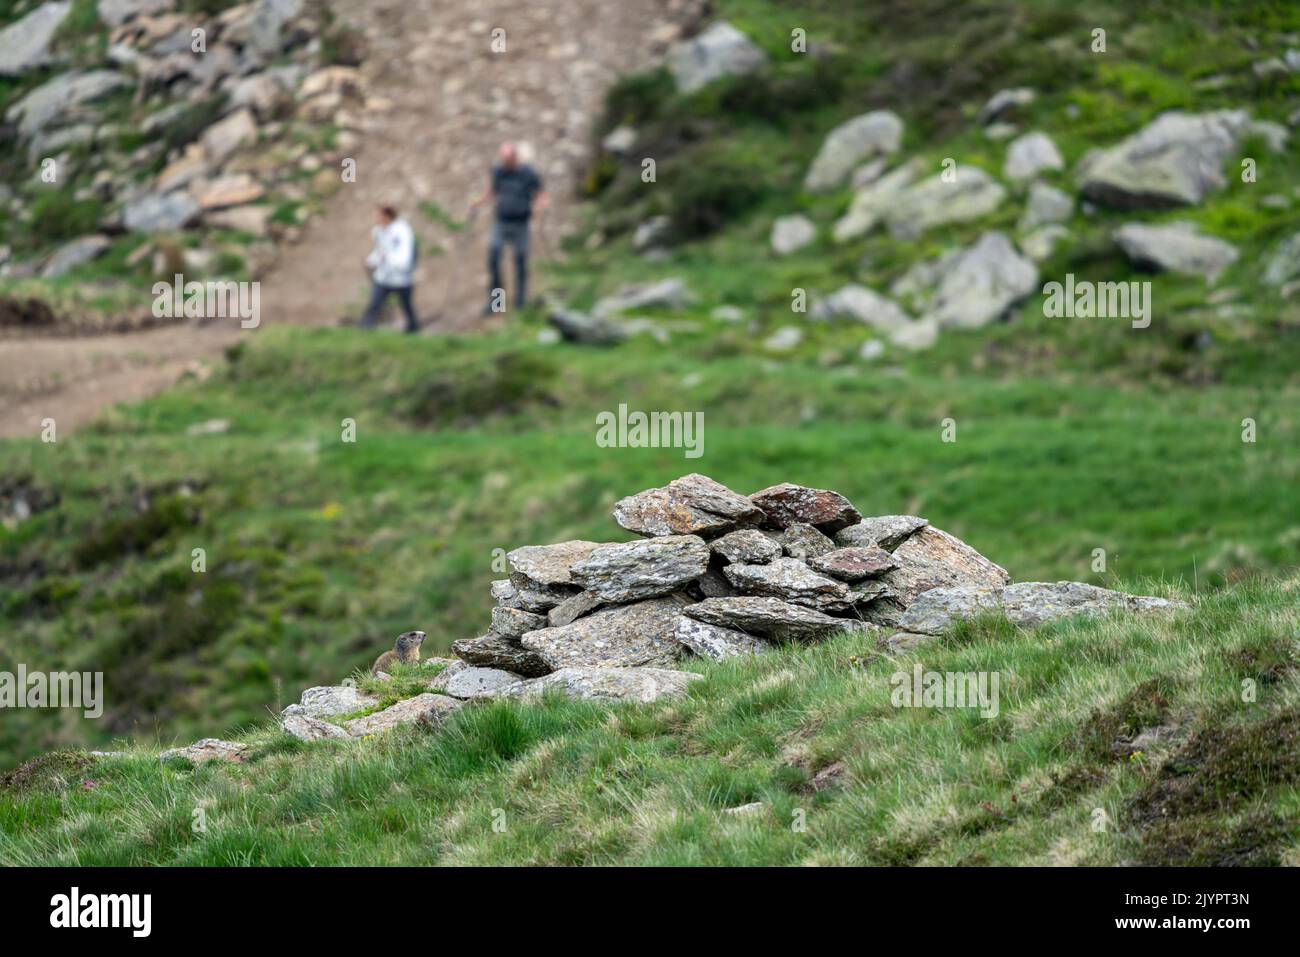 Marmotta alpina (Marmota marmota) in piedi dietro una roccia, mentre alcuni escursionisti passano sul sentiero più in basso. Valcolla, ex comune di Lugano nel cantone Ticino, Svizzera Foto Stock